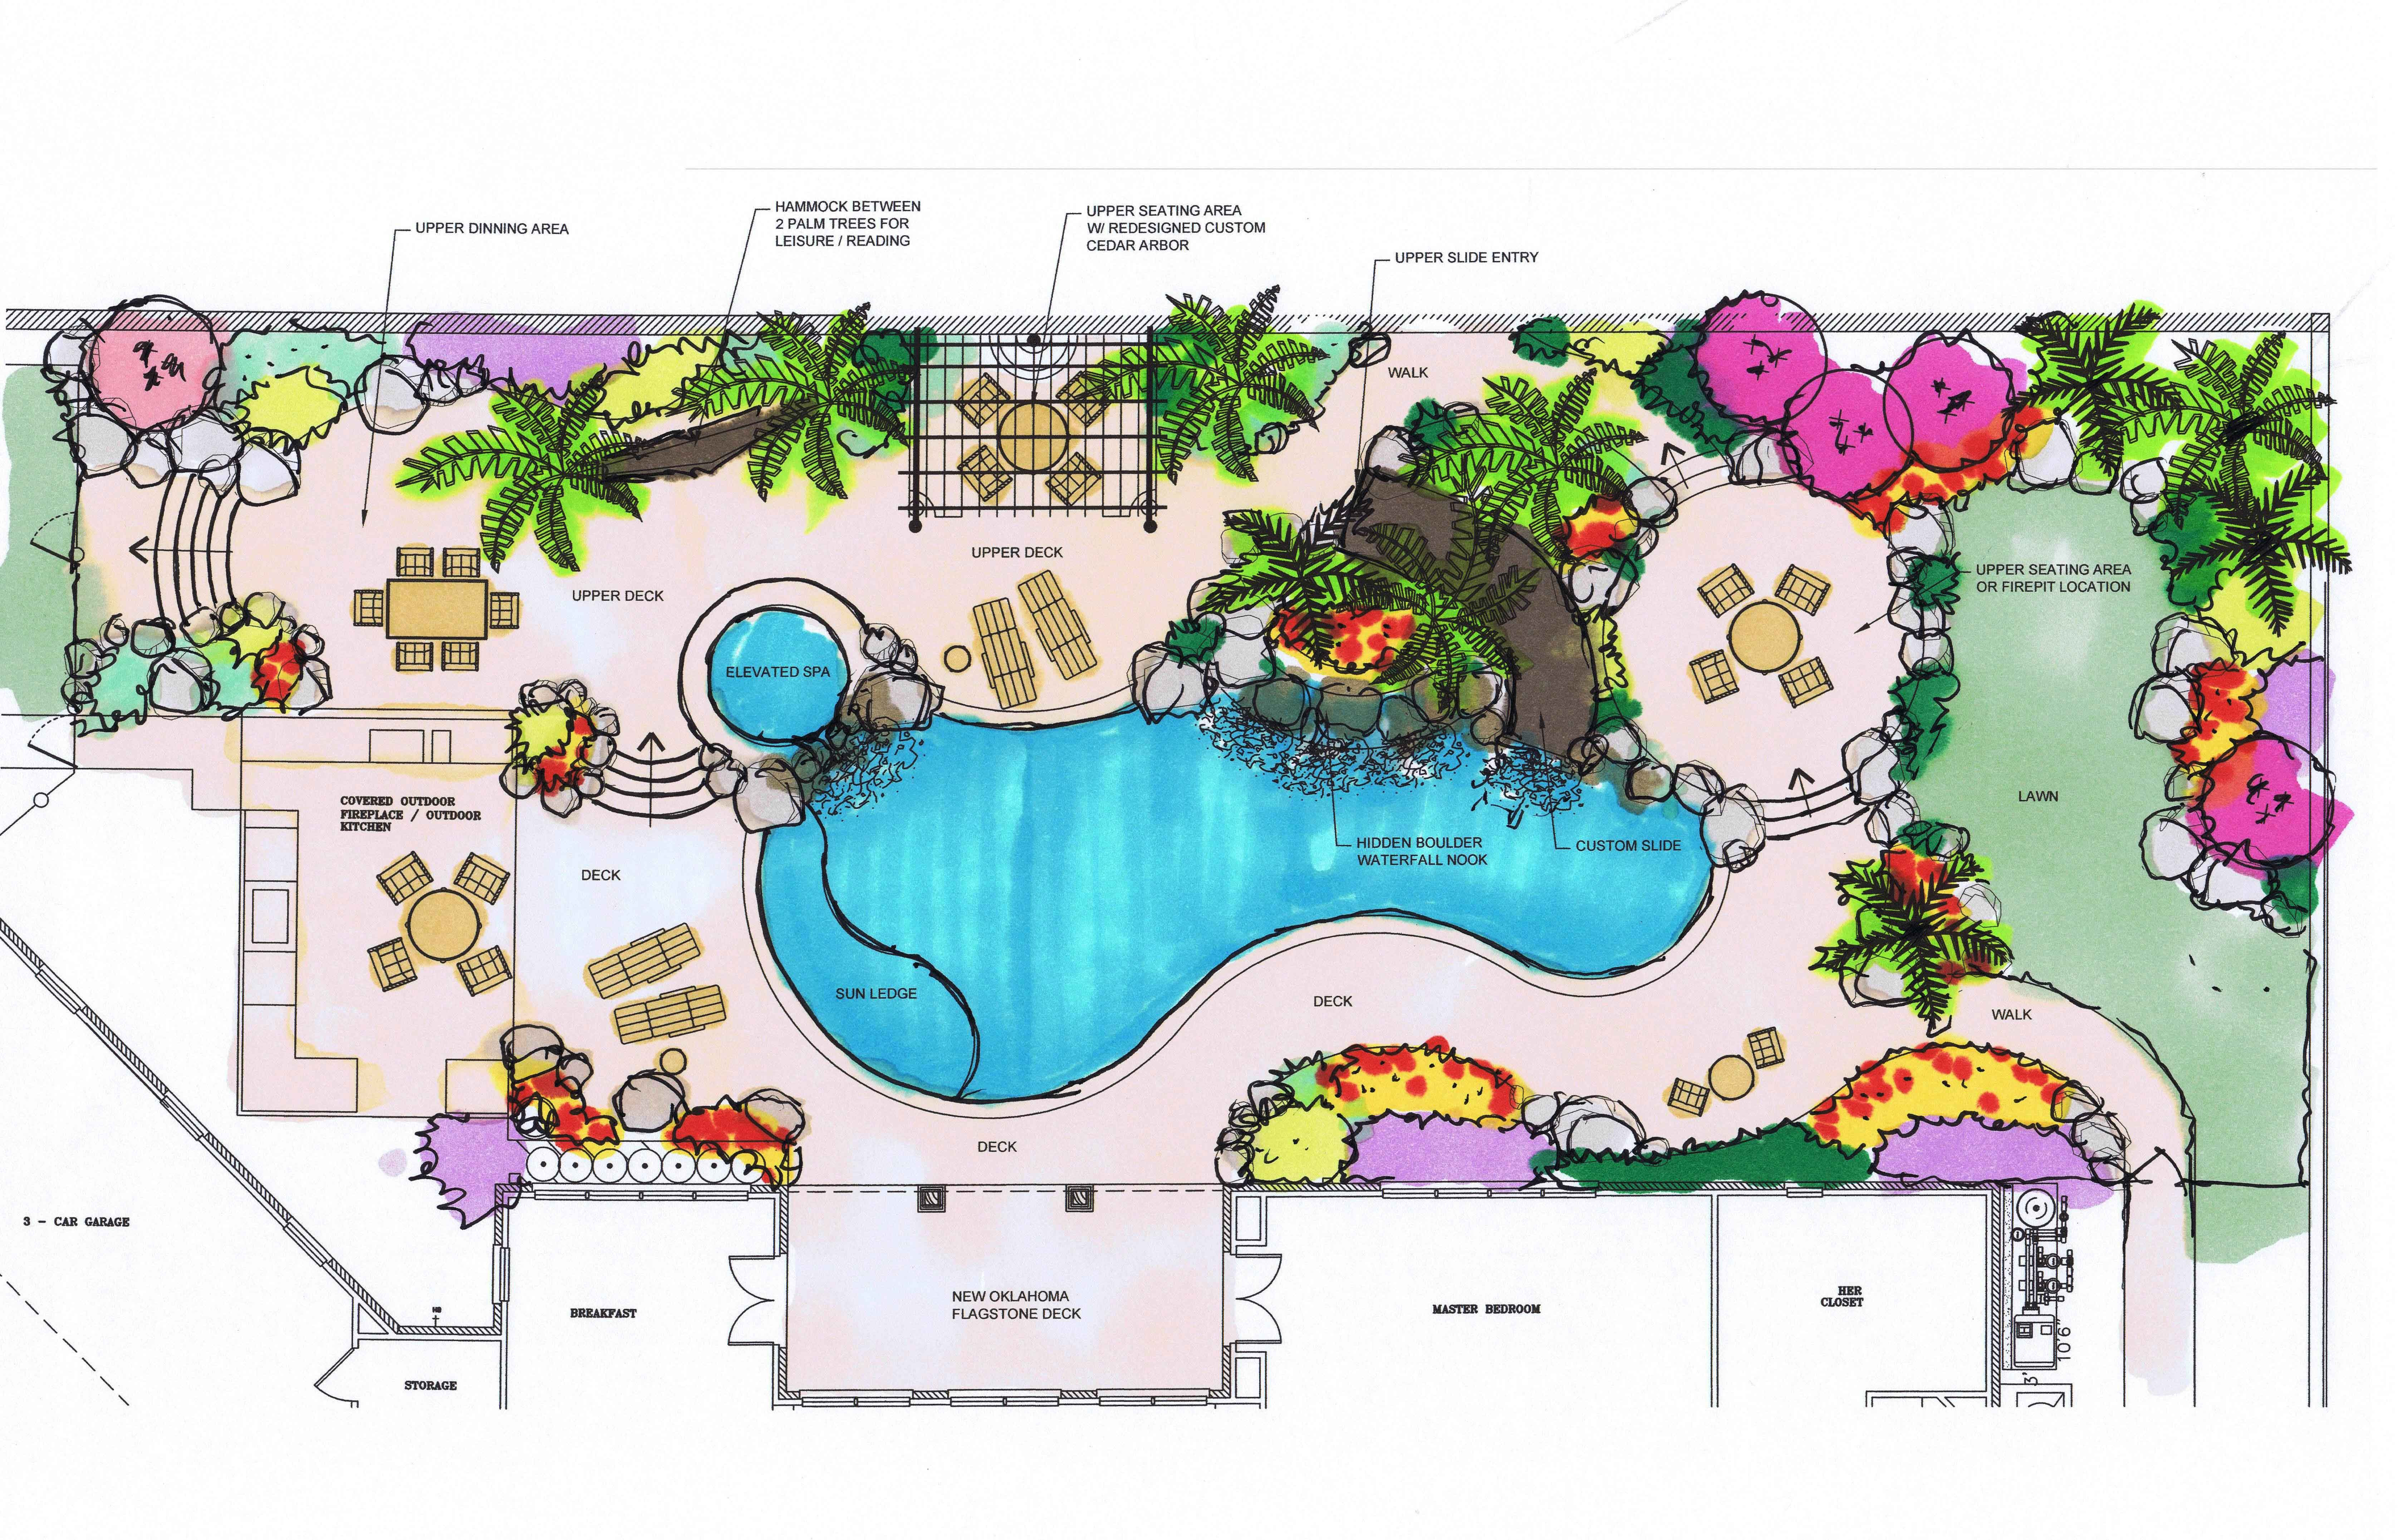 Best ideas about Landscape Design Plans
. Save or Pin Landscape Architect Master Plans Blueprints in Dallas Now.